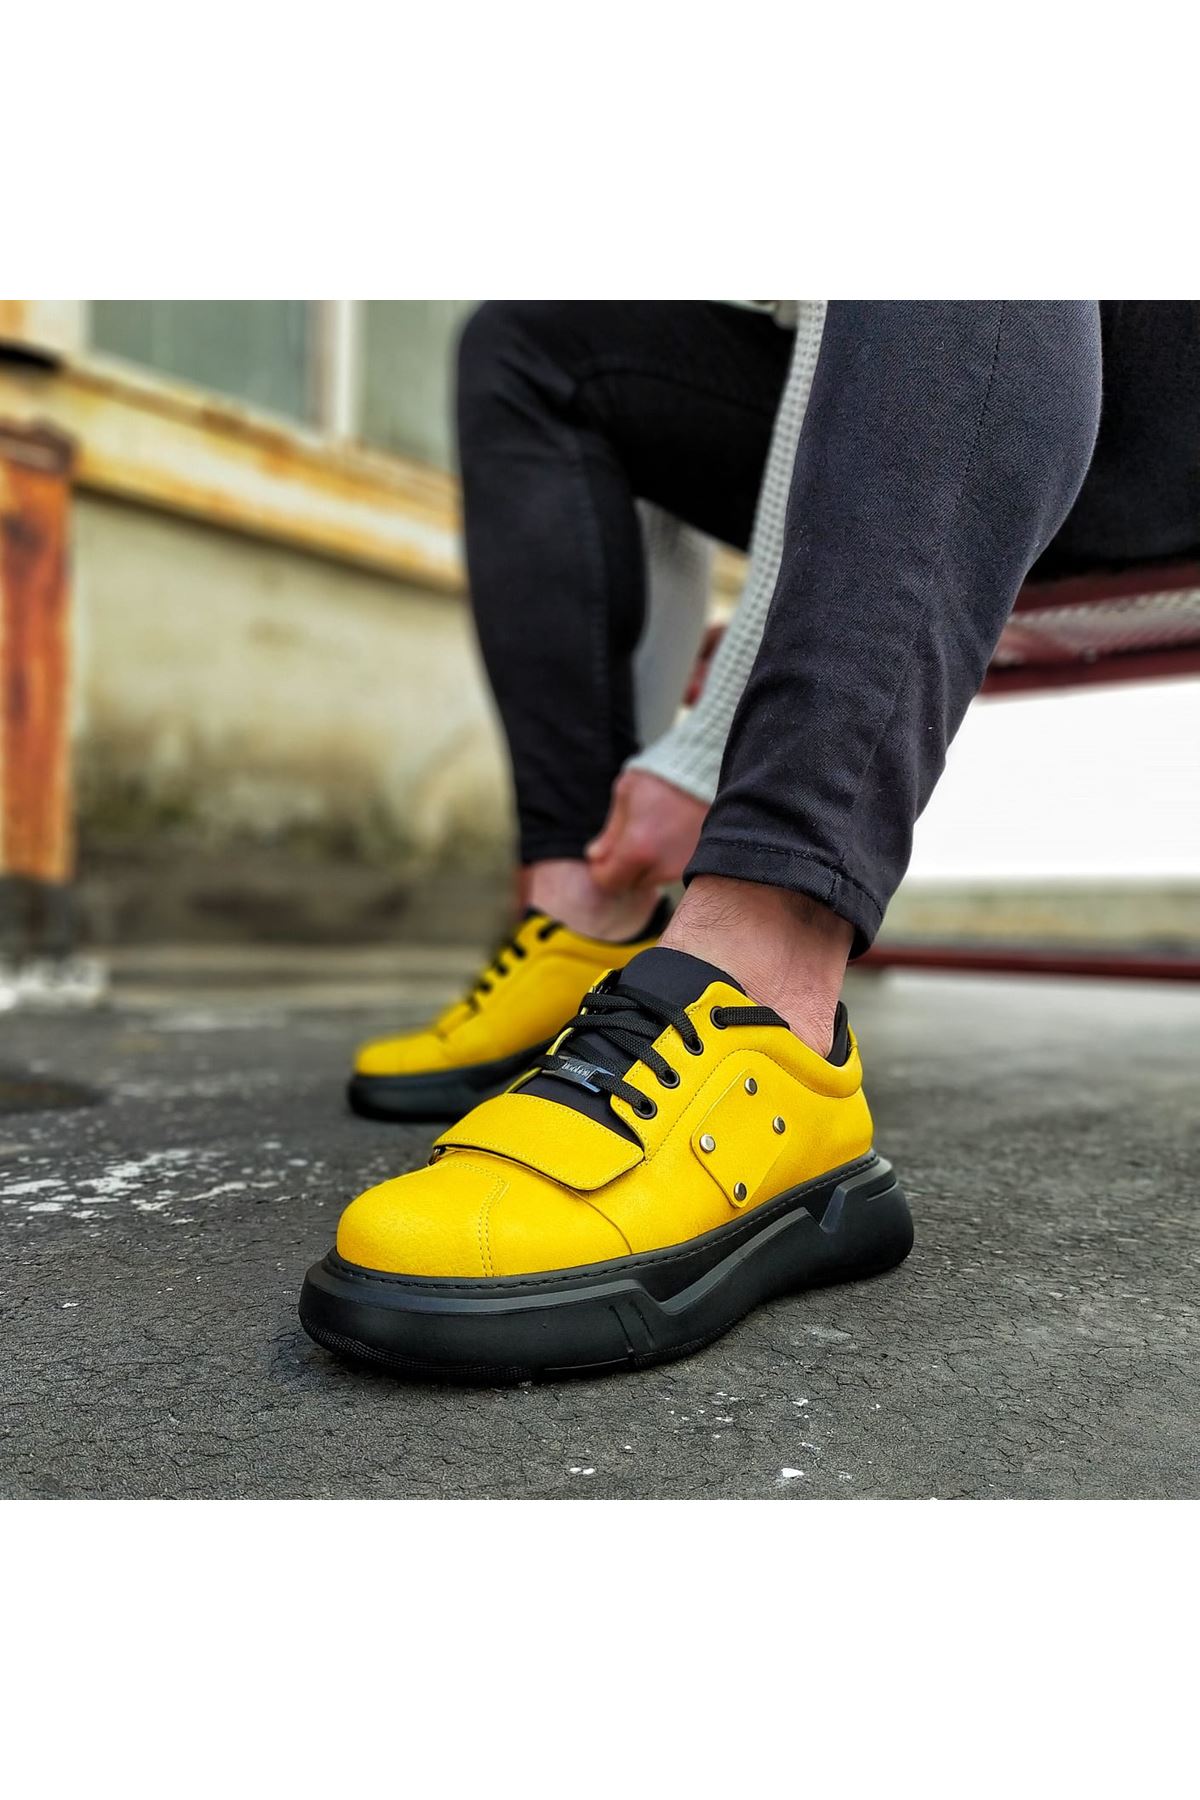 Wagoon WG018 Sarı Kömür Erkek Yüksek Taban  Ayakkabı